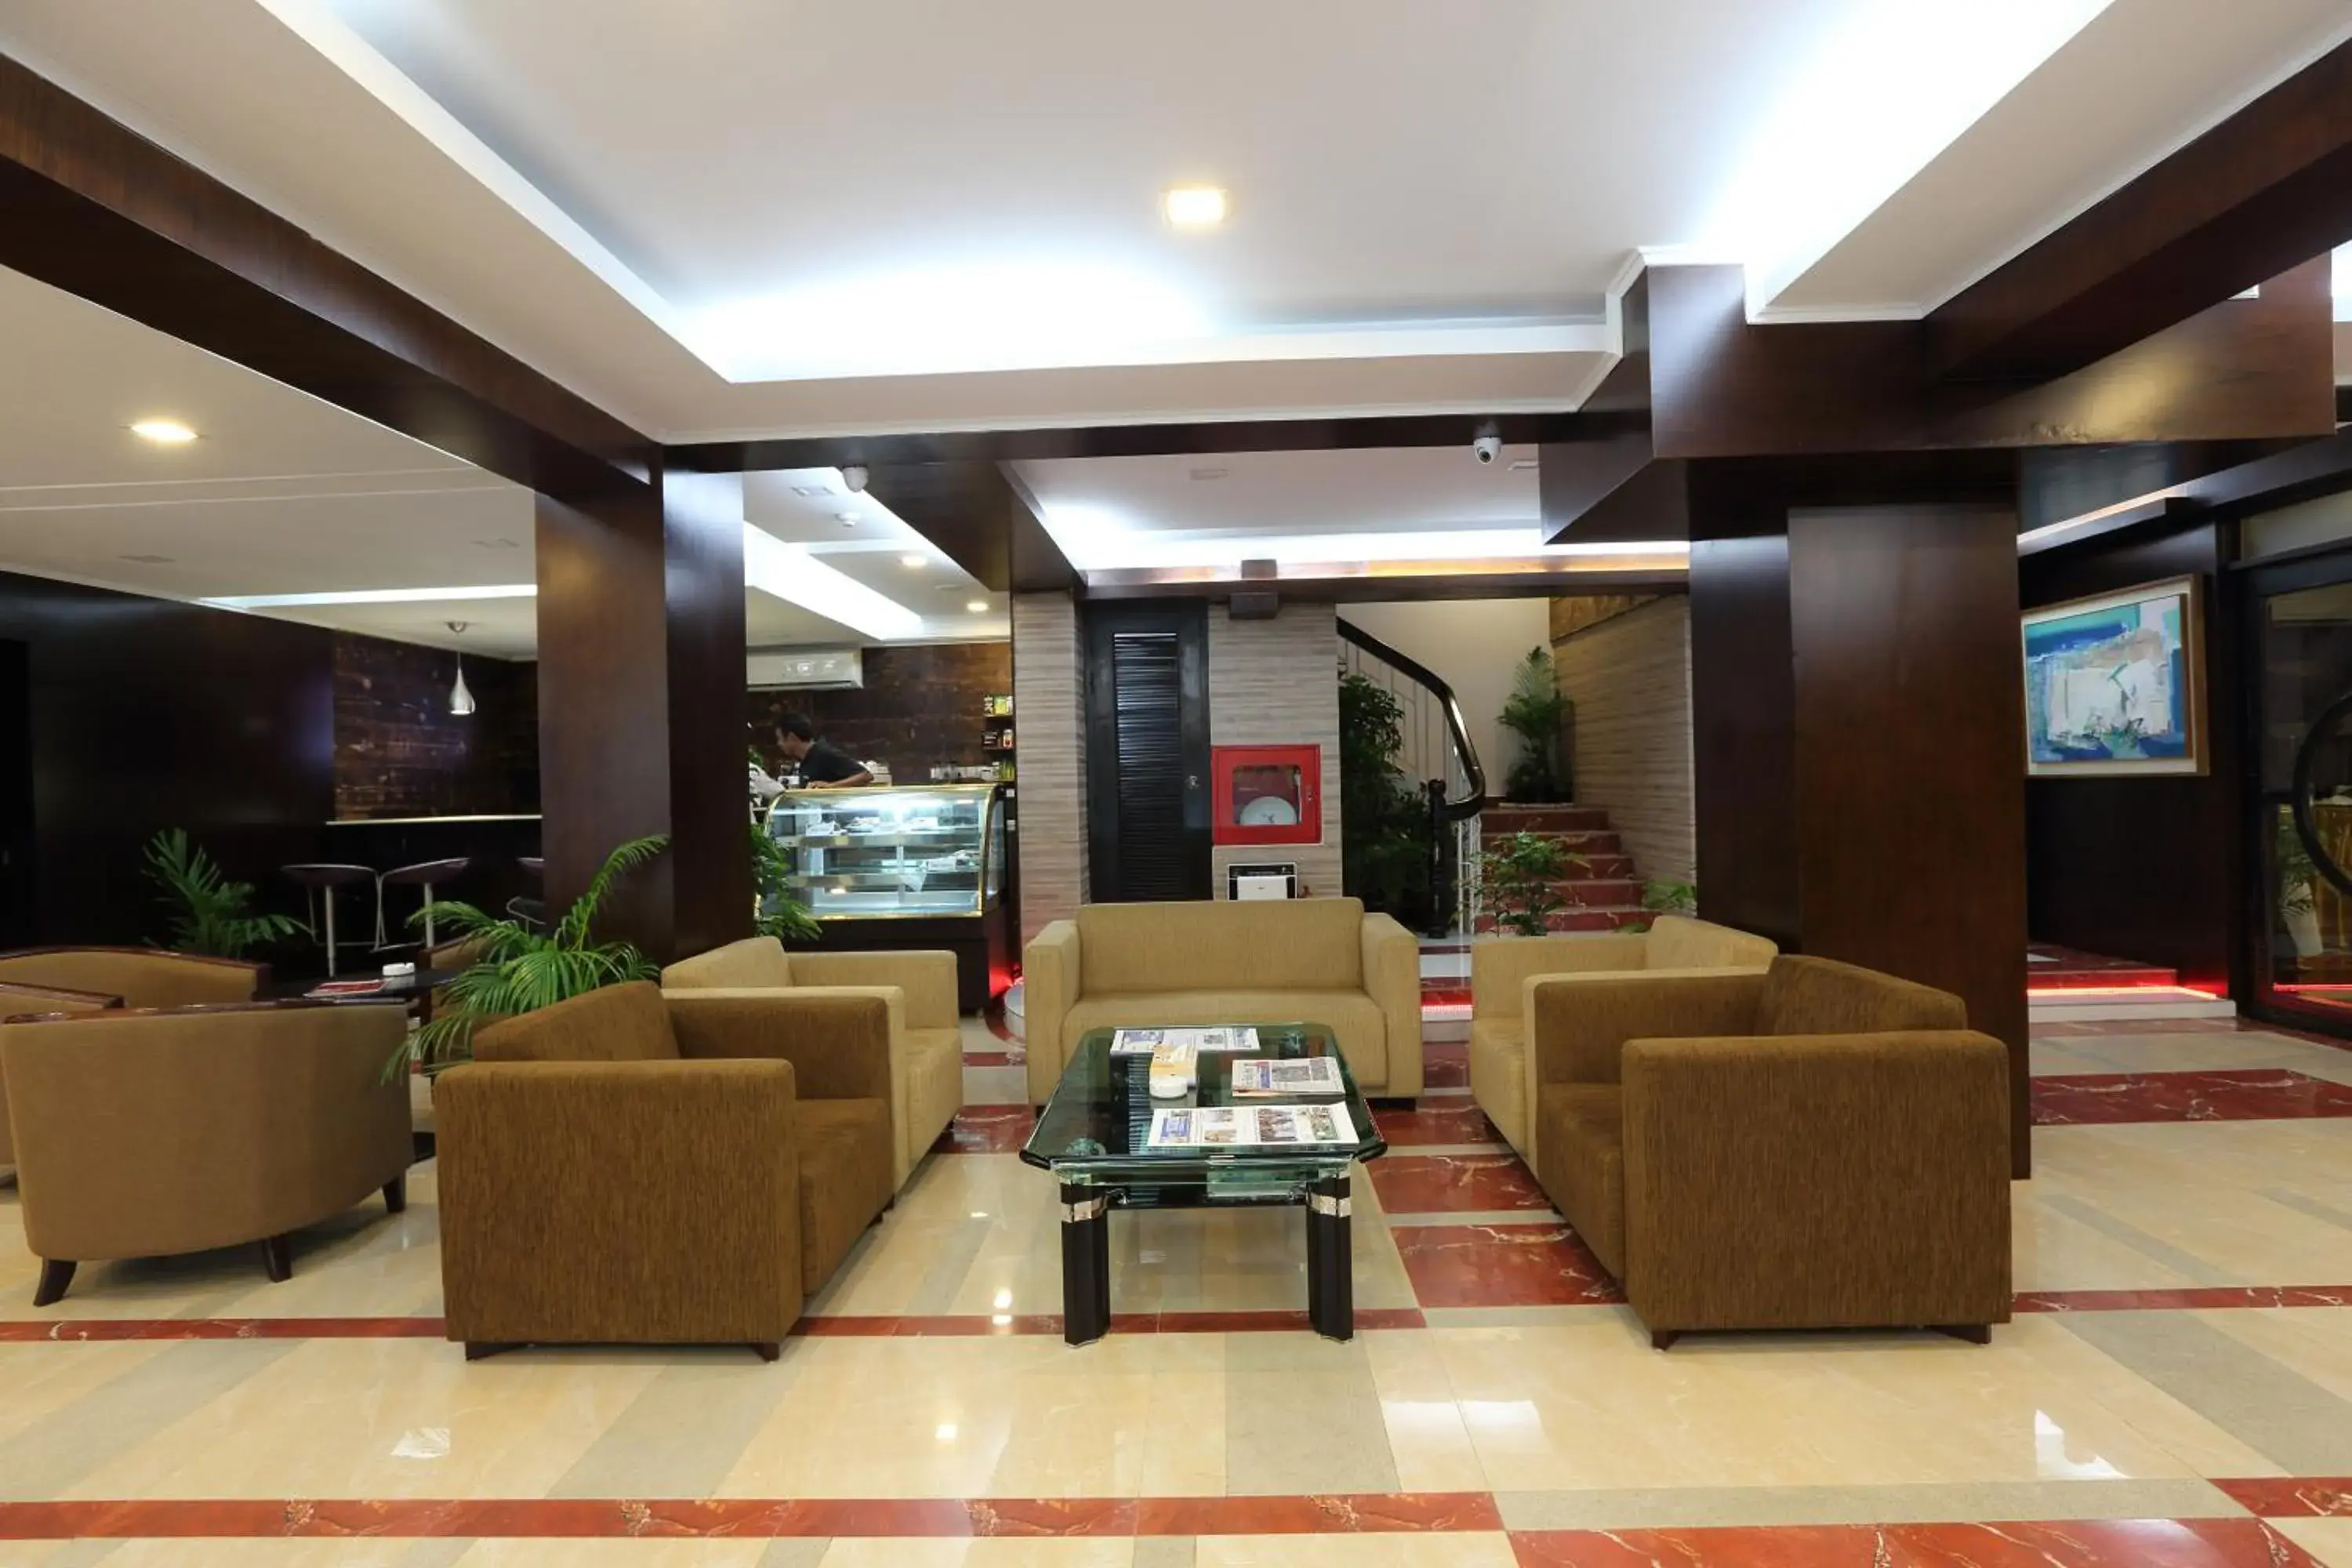 Lobby or reception, Lobby/Reception in Nascent Gardenia Baridhara